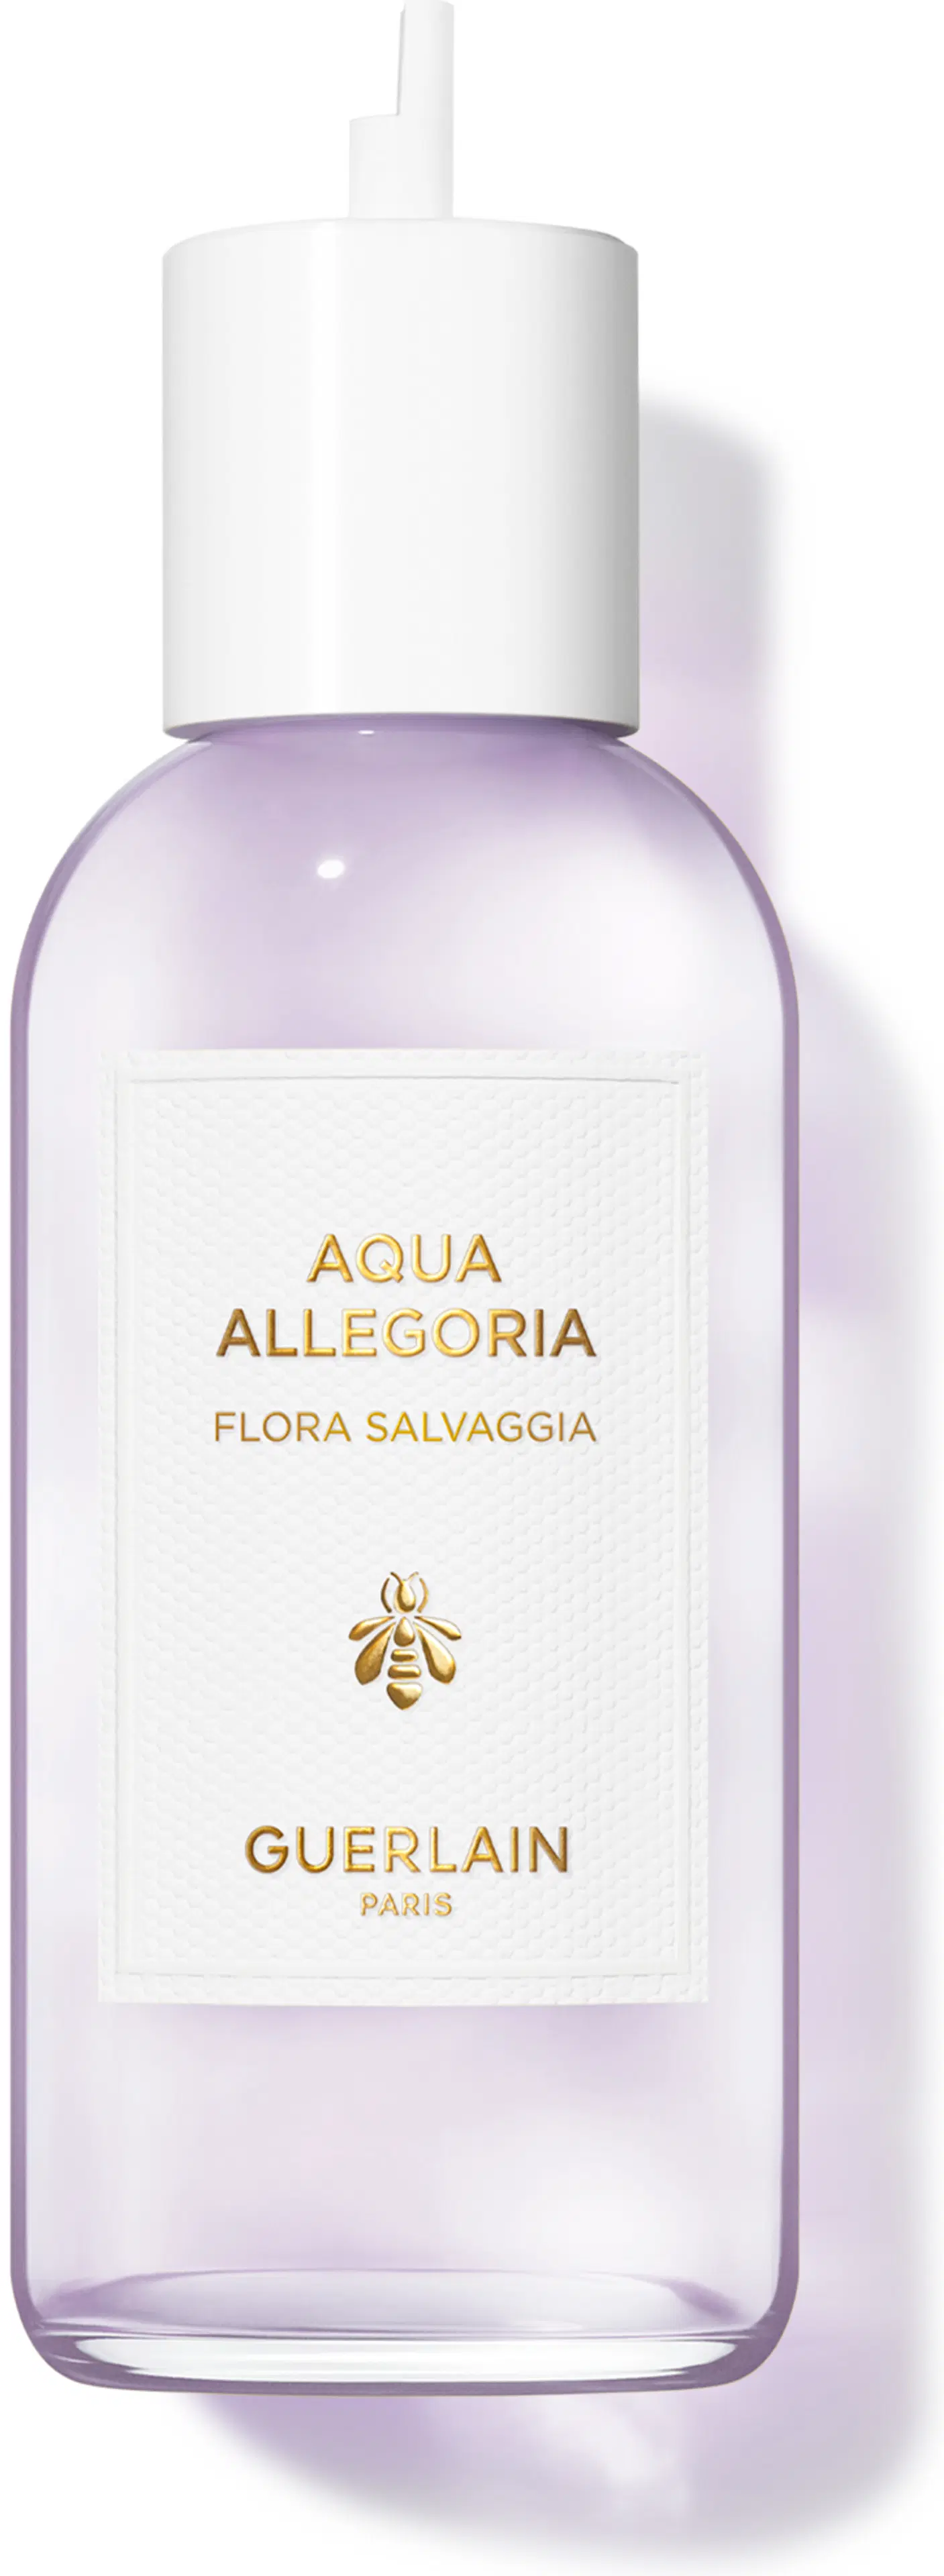 Guerlain Aqua Allegoria Flora Salvaggia EDT refill 200 ml